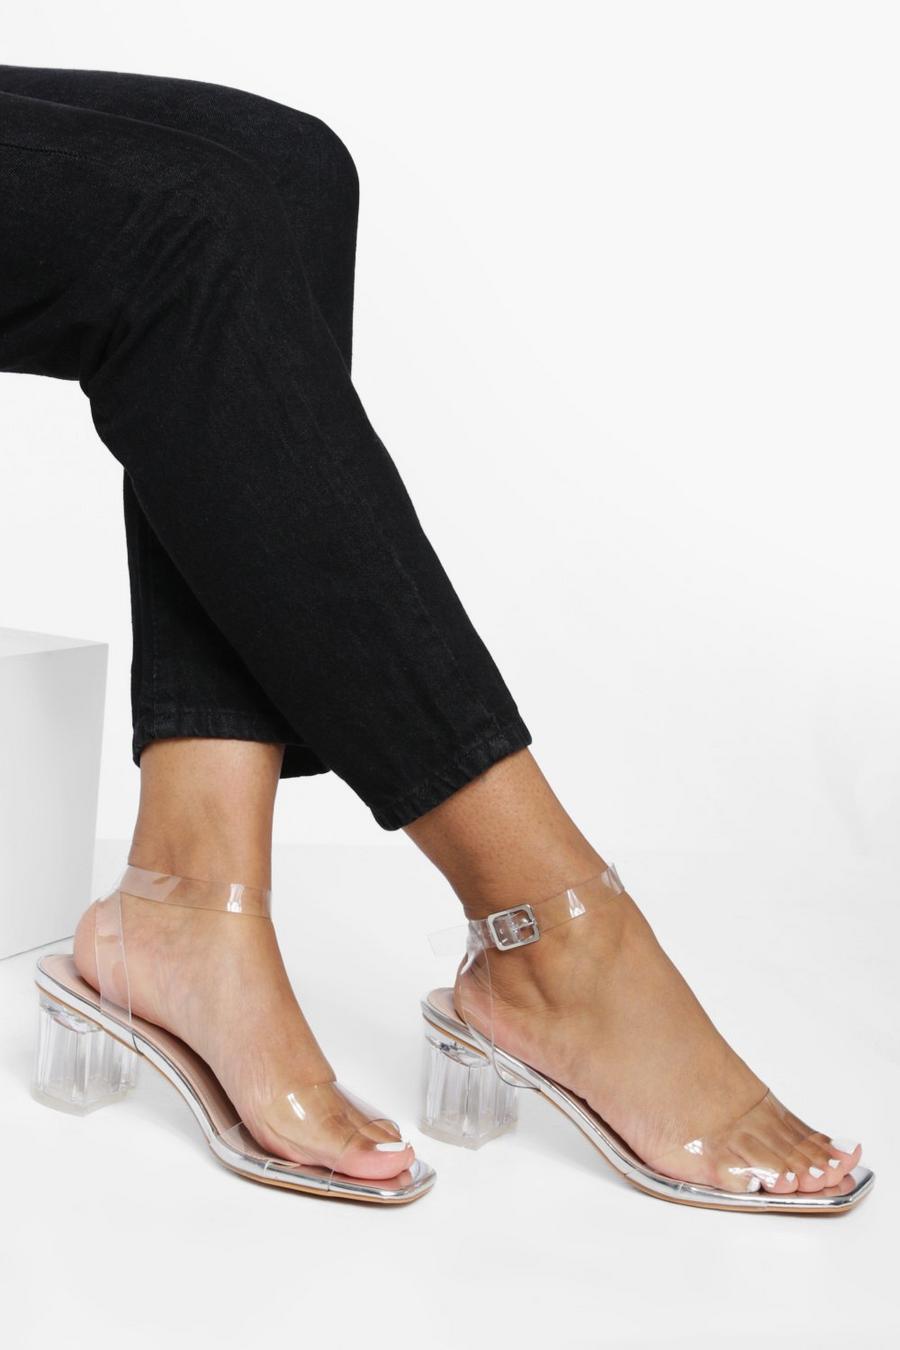 Scarpe a calzata ampia con tacco a blocco e fibbia trasparente, Clear